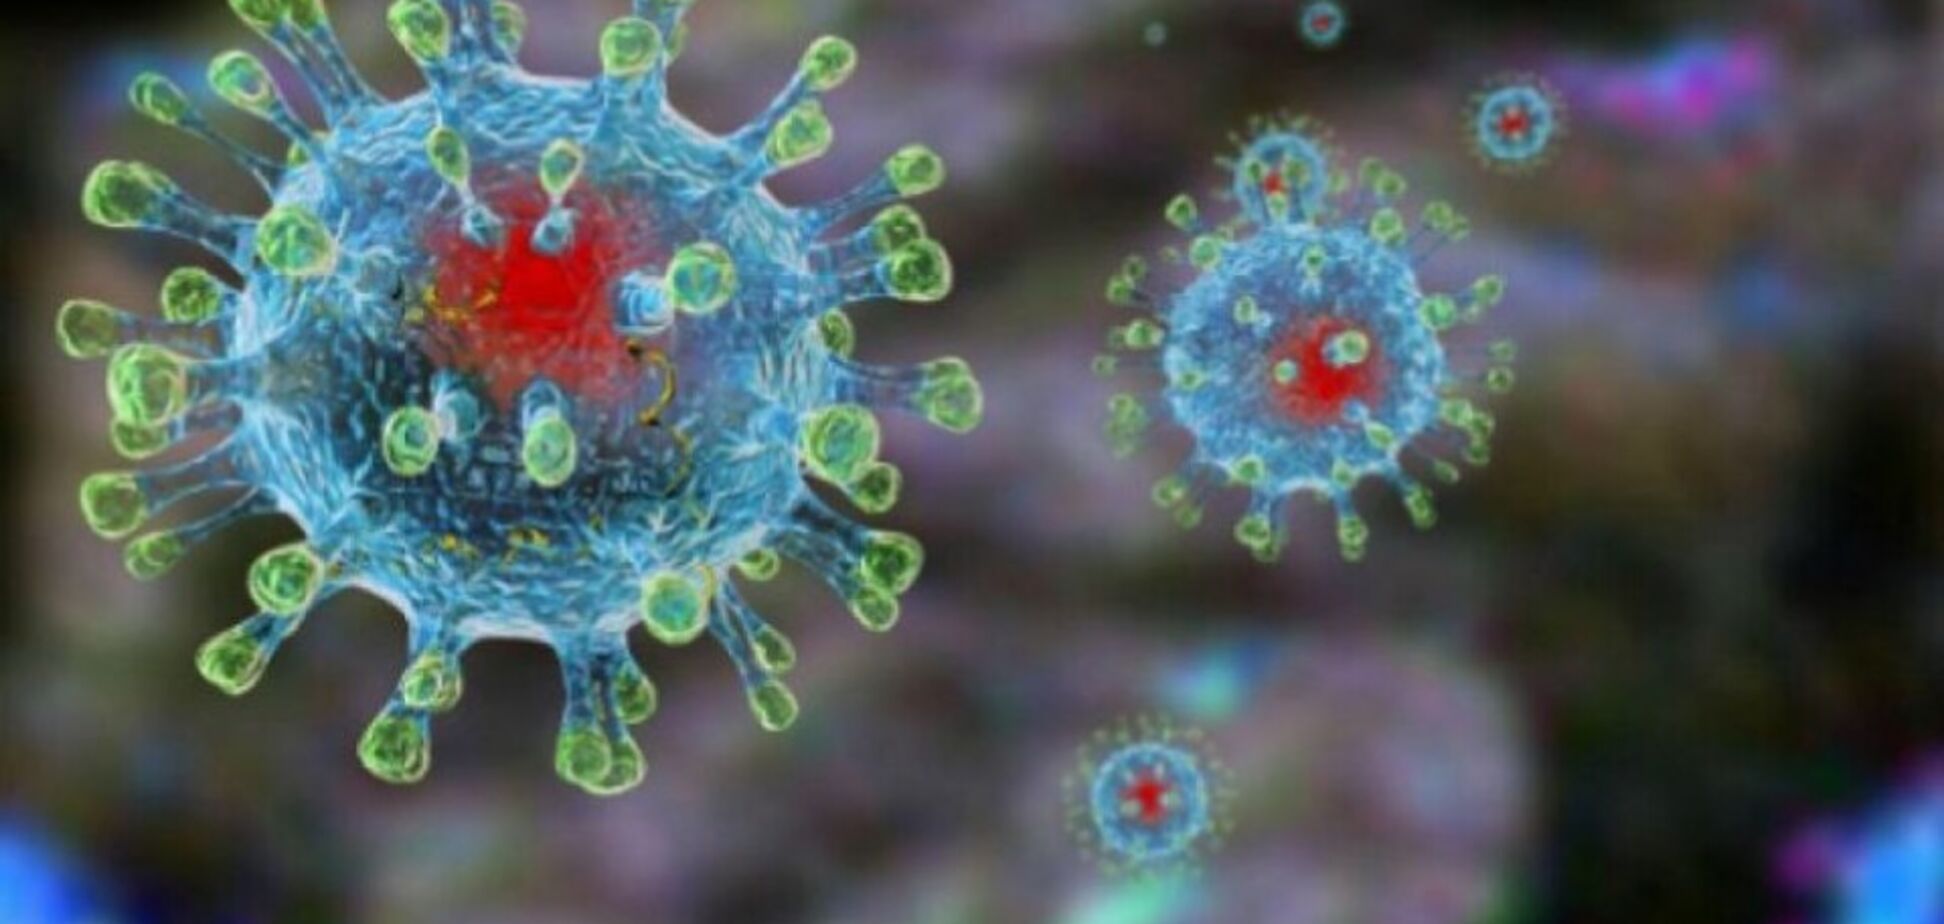 Переболевшие коронавирусом люди защищены на несколько лет вперед – иммунолог